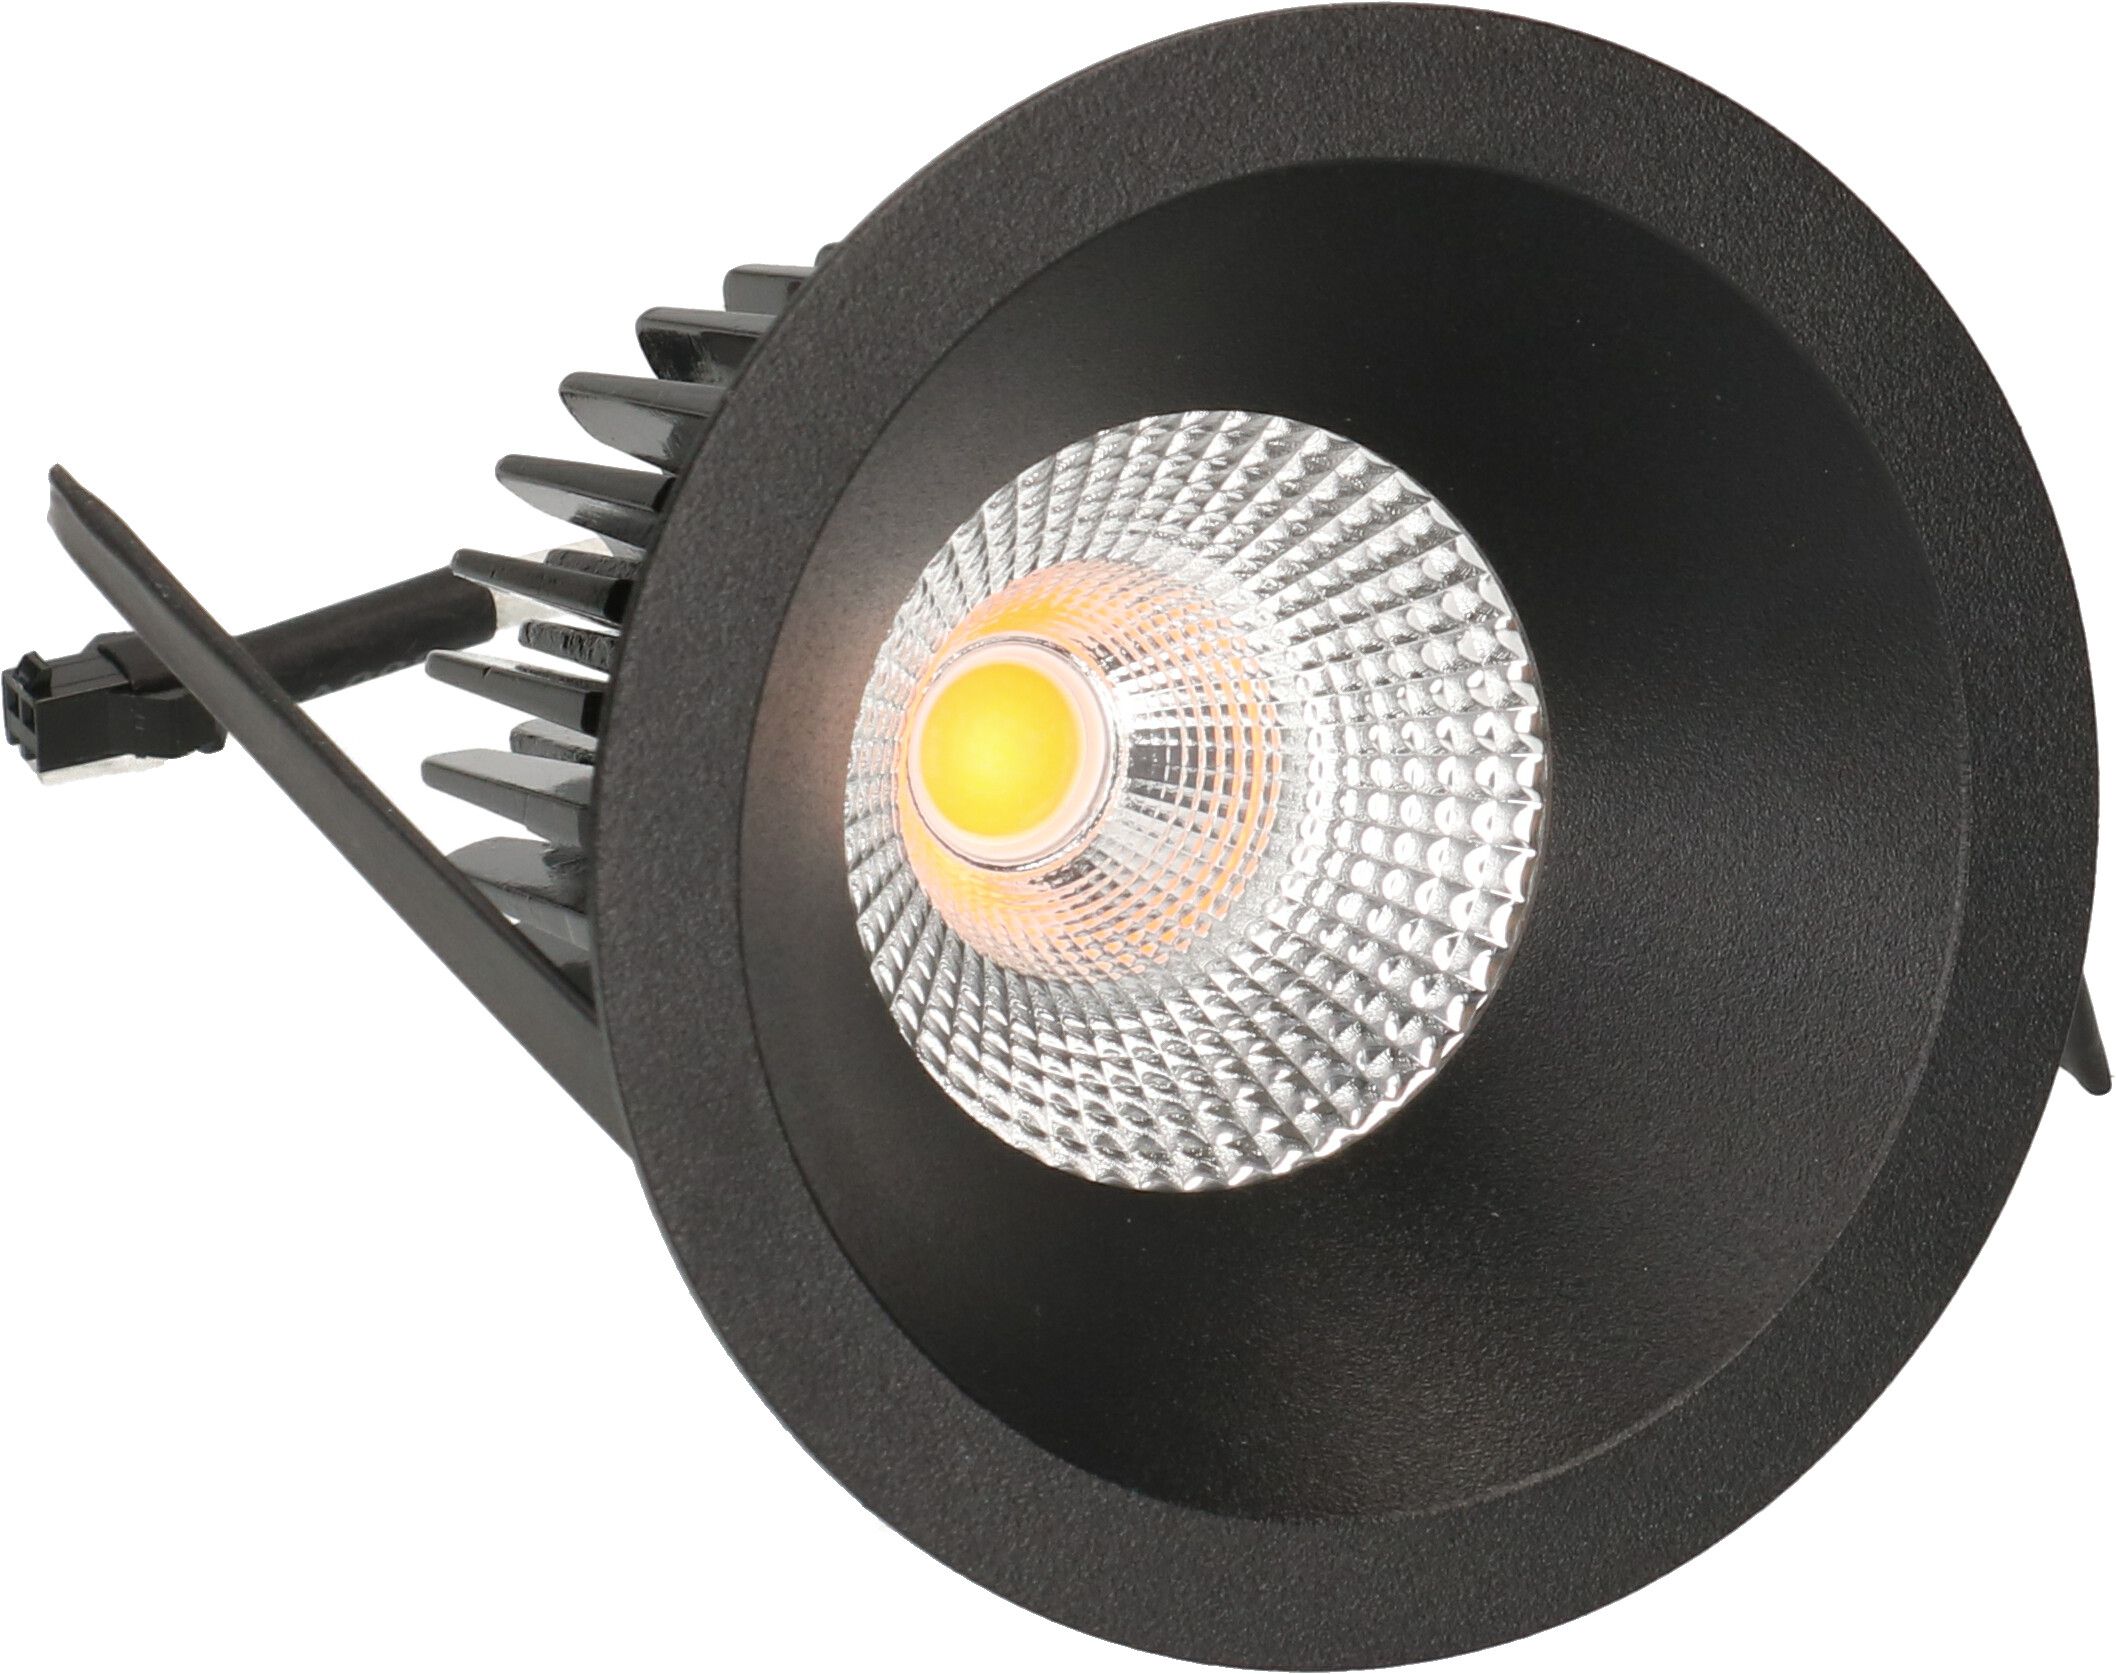 LED-Einbauspot ATMO 80 schwarz 3000K 960lm 38°